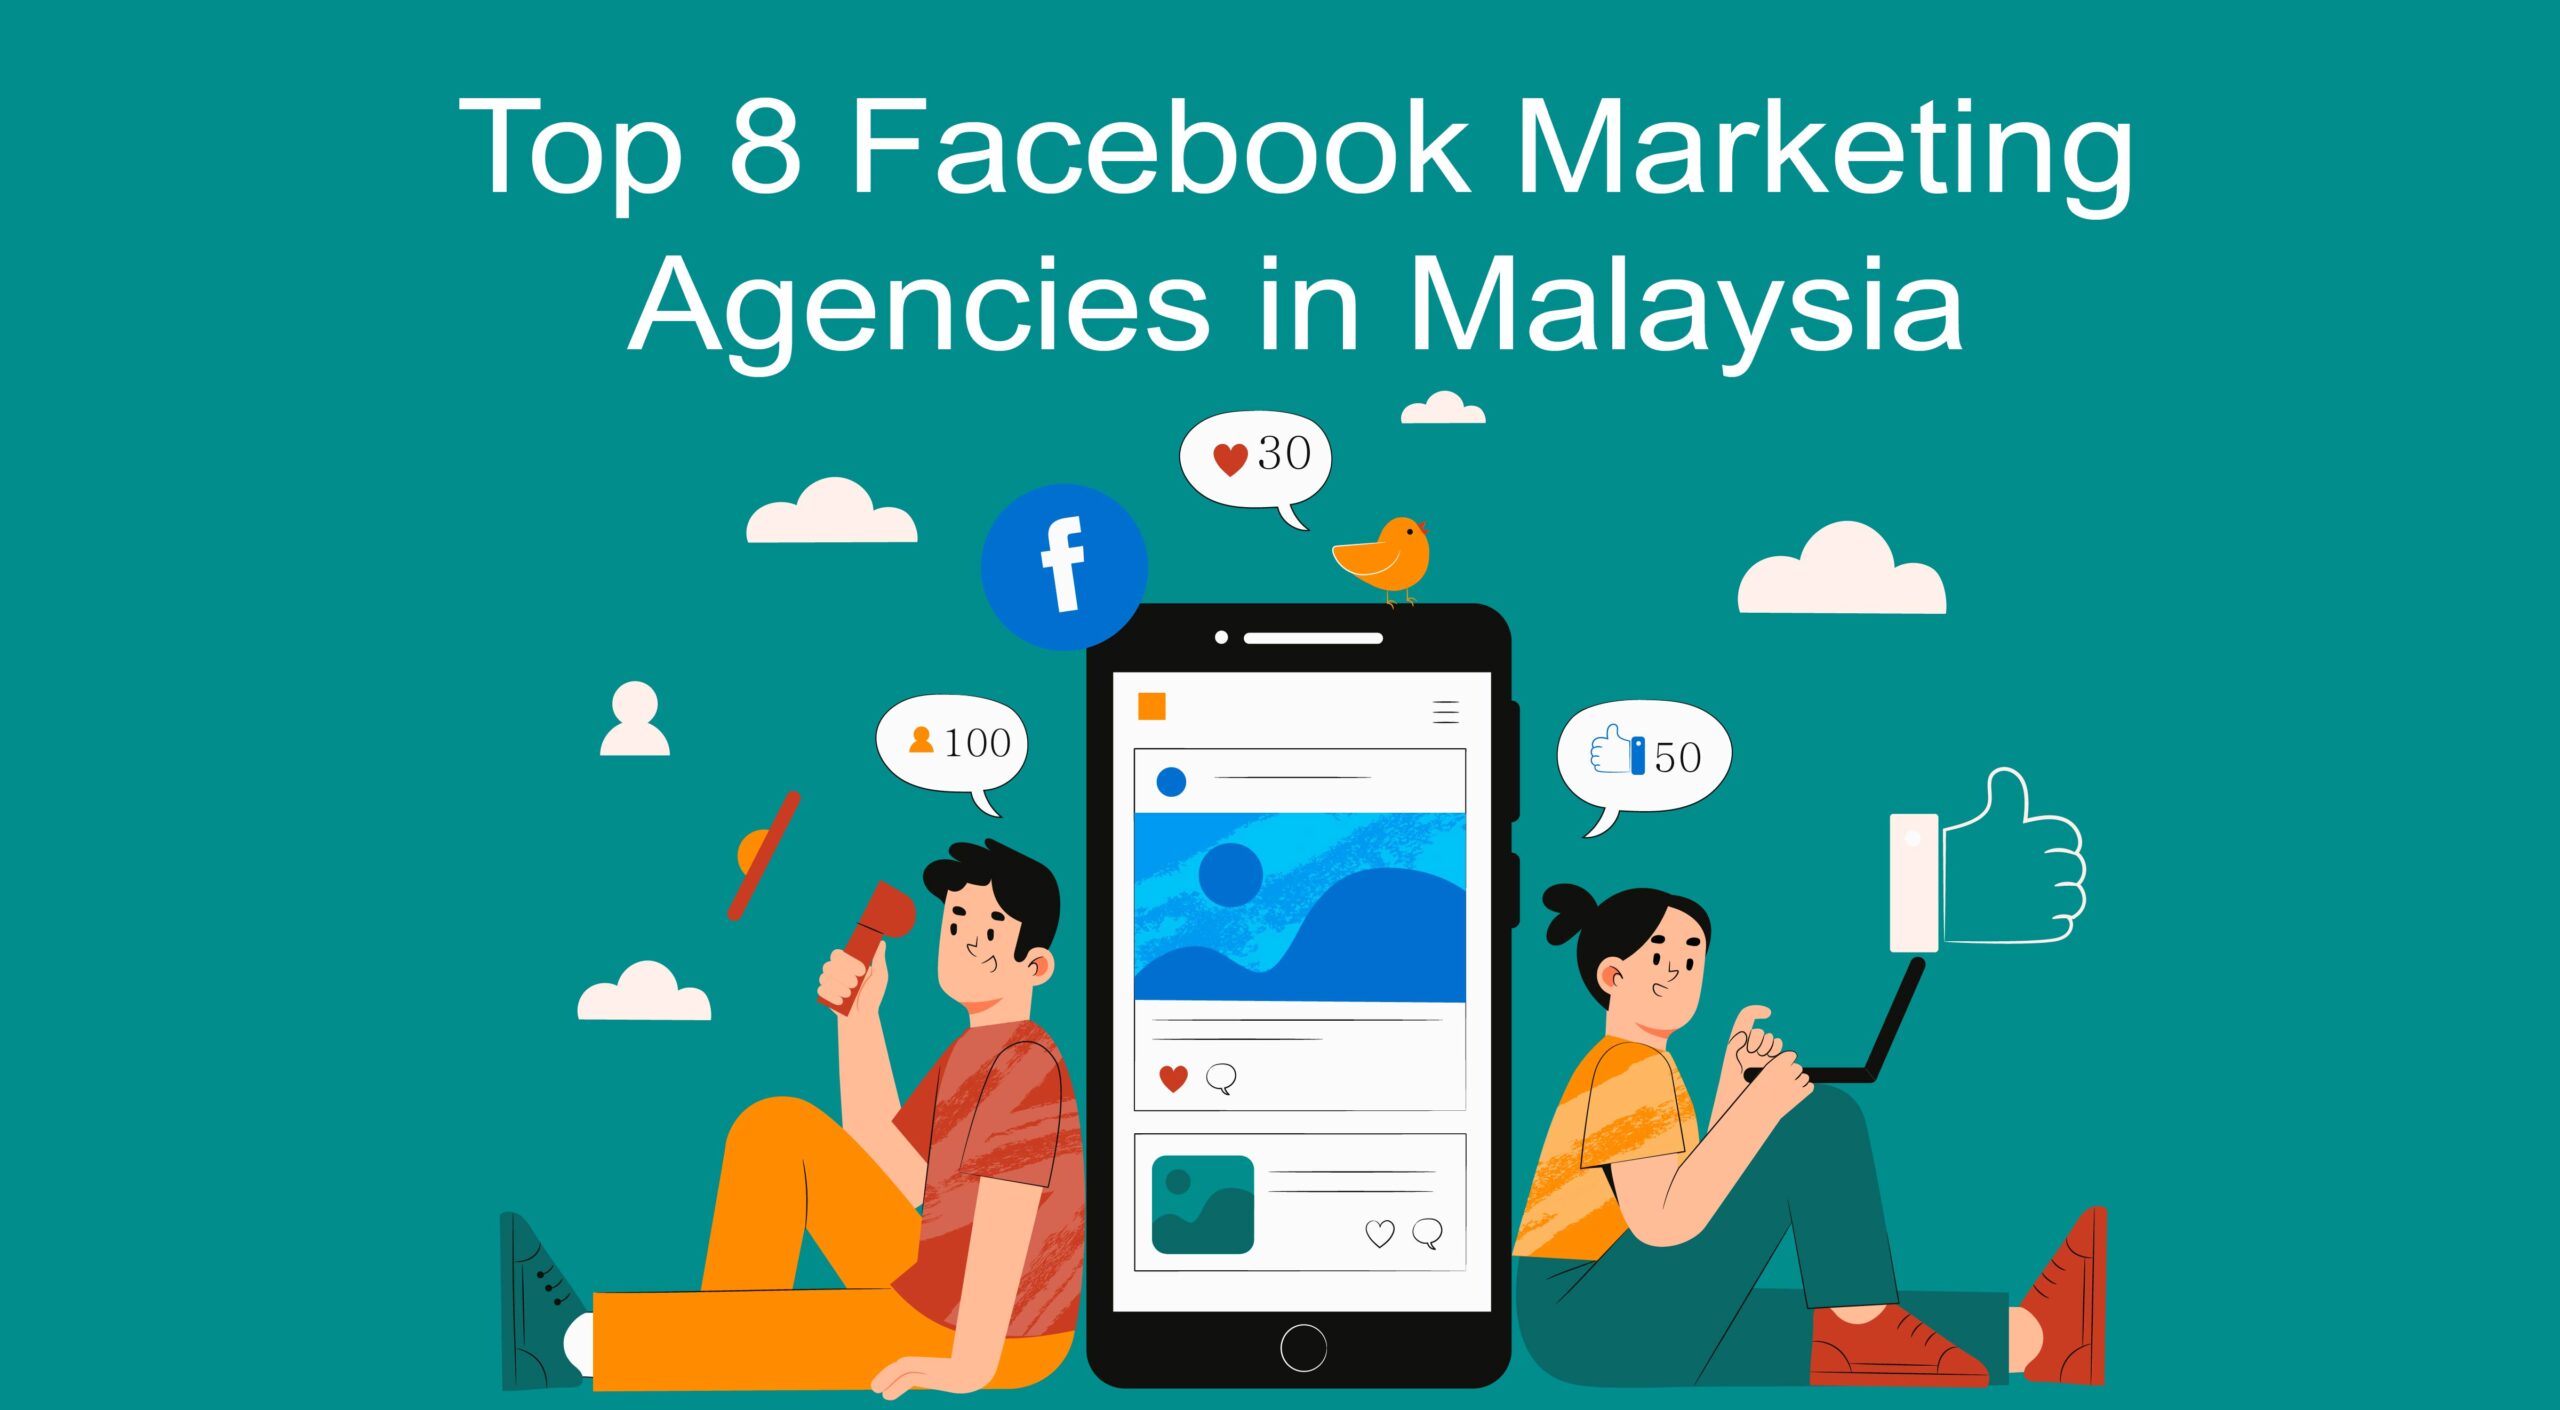 Facebook Marketing Agencies in Malaysia